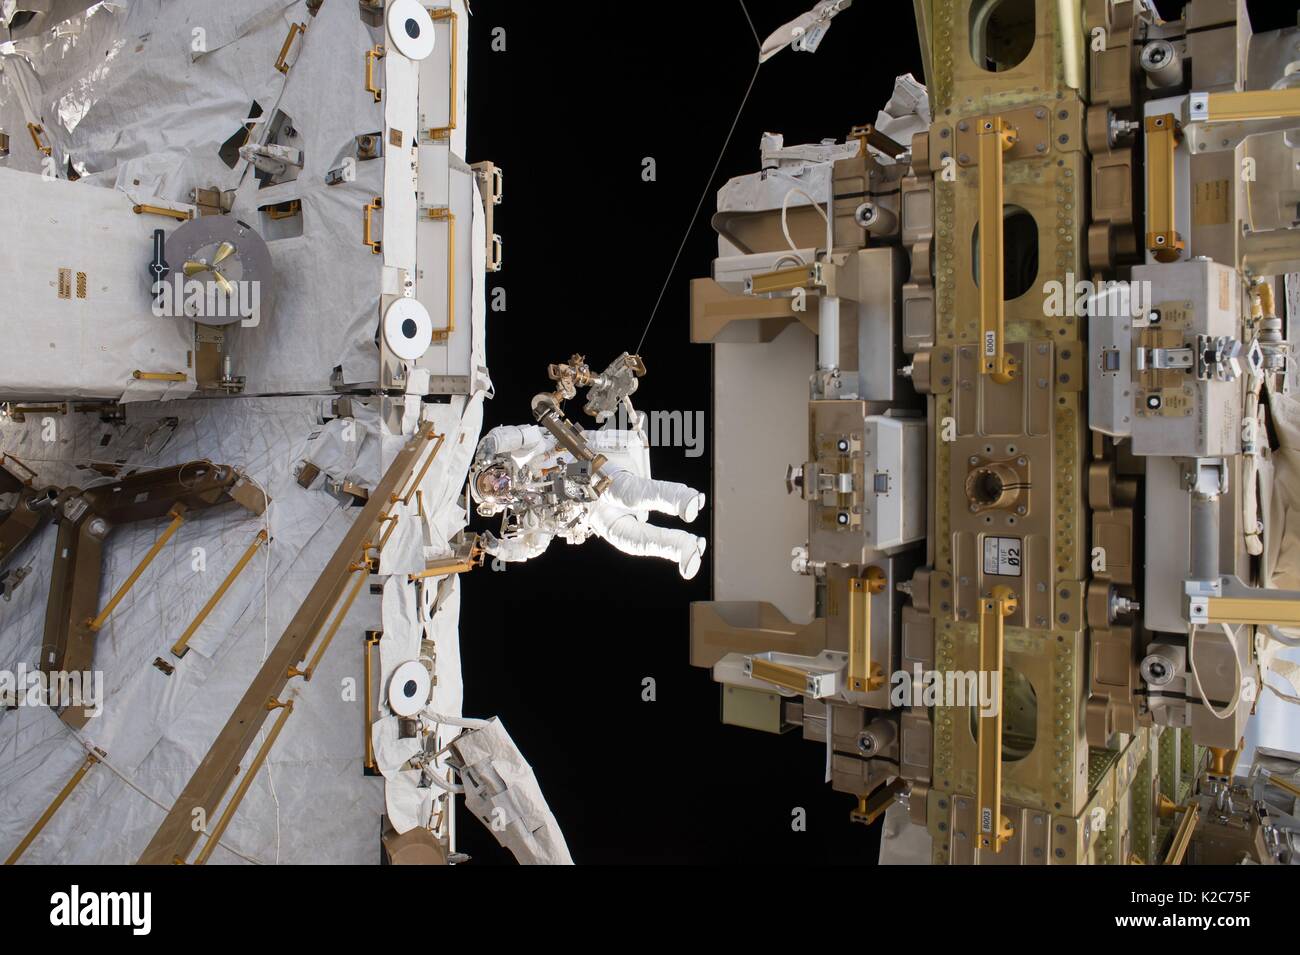 Die NASA ISS Expedition 50 prime Besatzungsmitglied französische Astronaut Thomas Pesquet der Europäischen Raumfahrtagentur arbeitet auf der Außenseite der ISS während einer EVA spacewalk März 24, 2017 im Erdorbit. Stockfoto